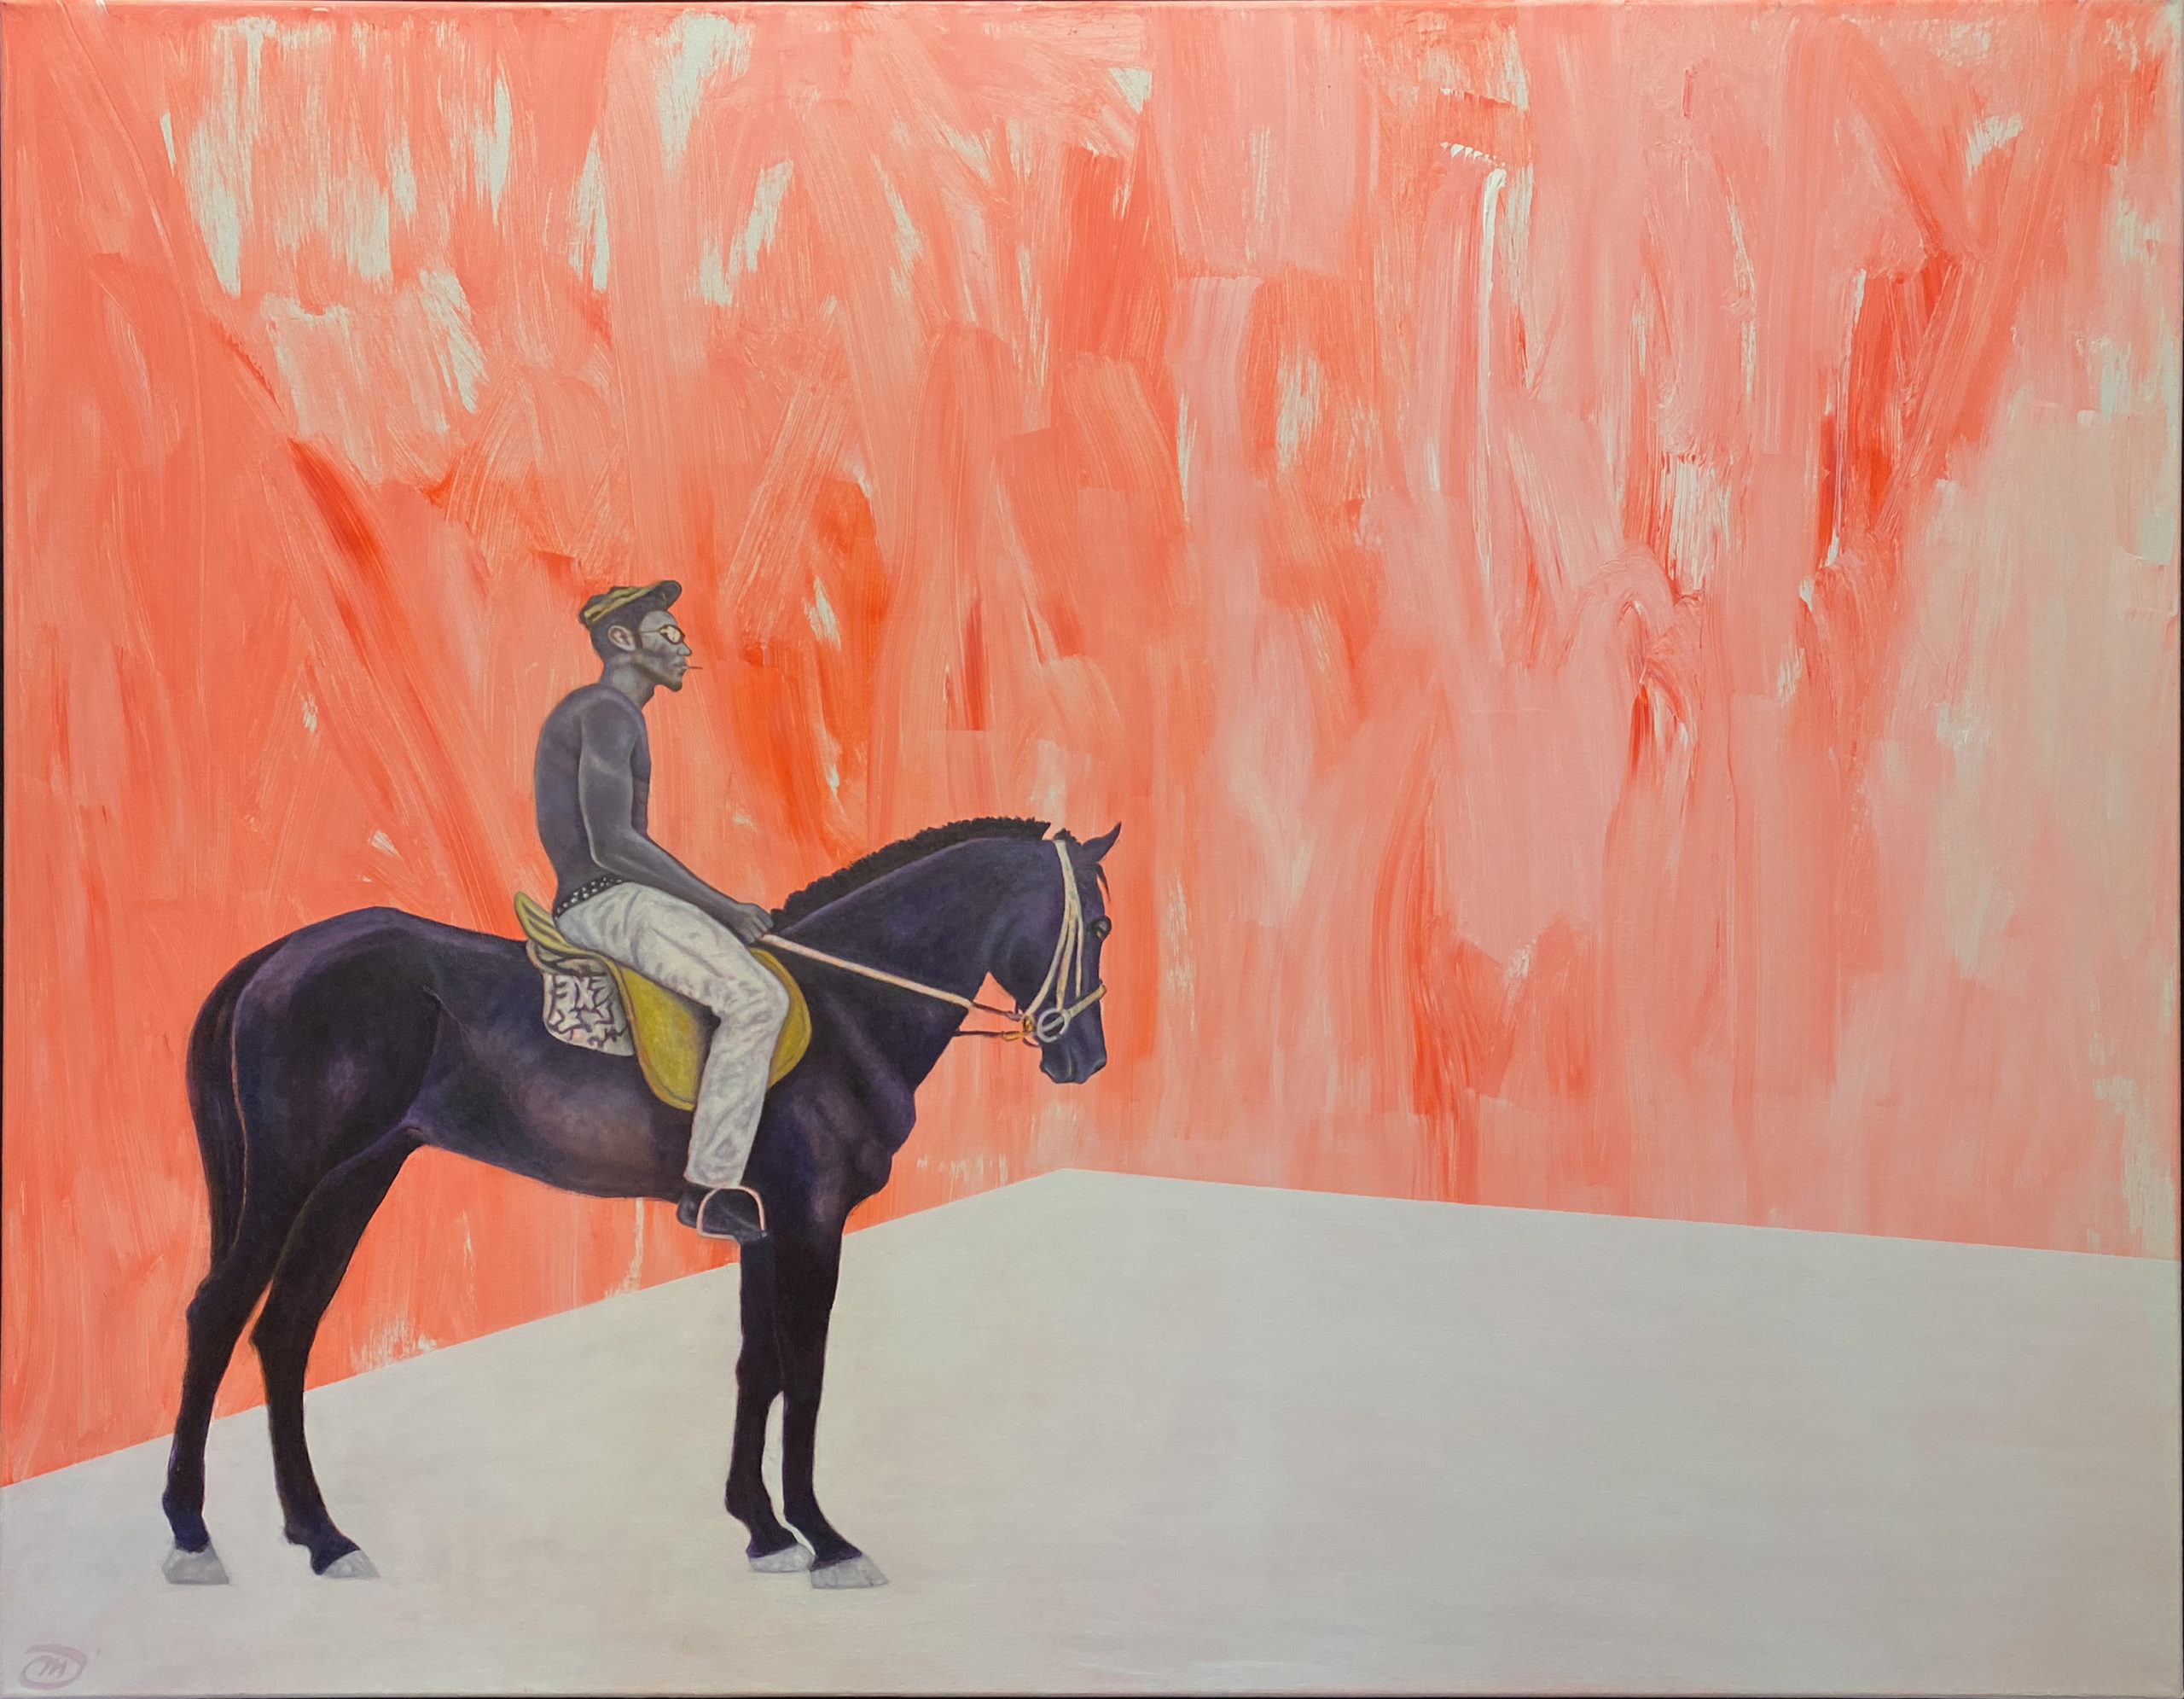 Les Cavaliers de la Perspective - Peinture contemporaine de Mael Denegri